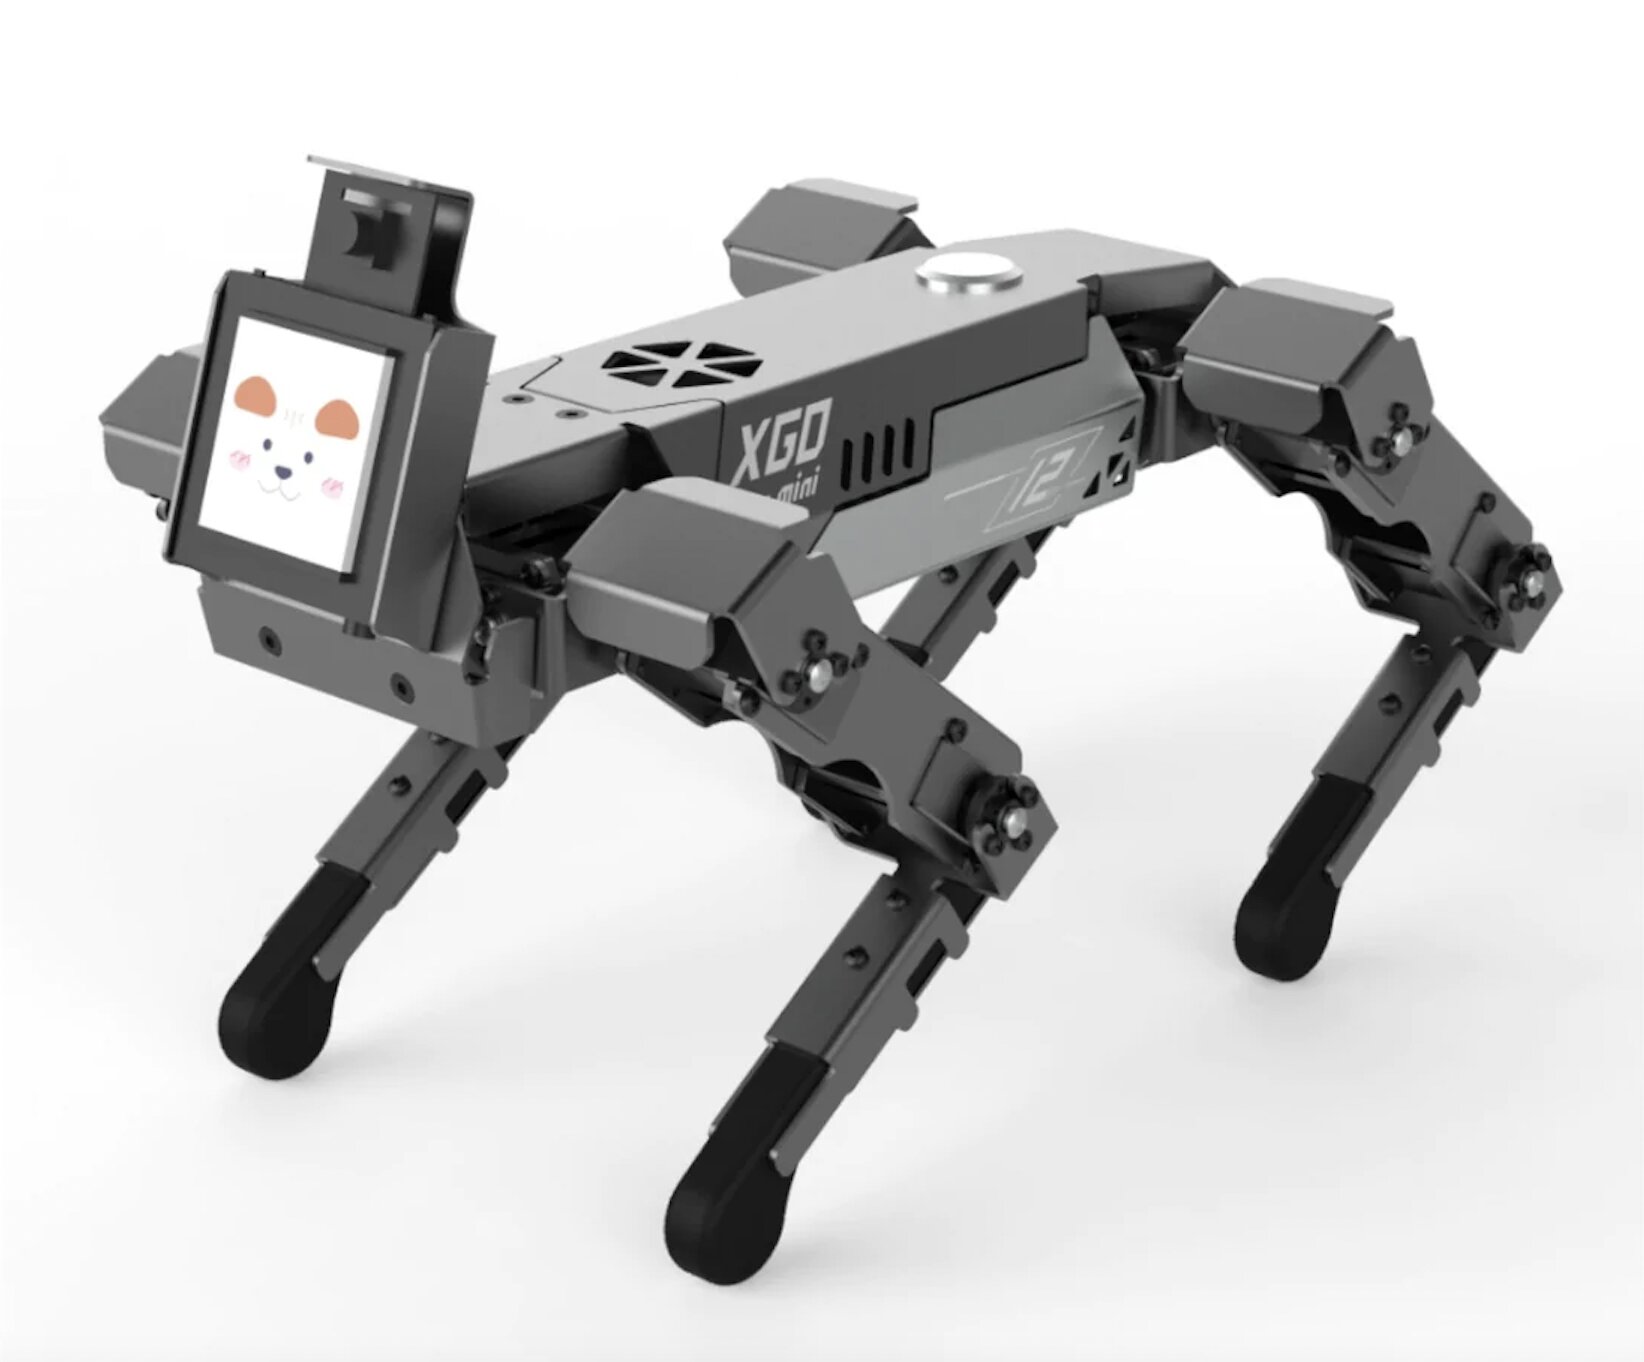 Pet robot concepts: 4 ideas - DesignWanted